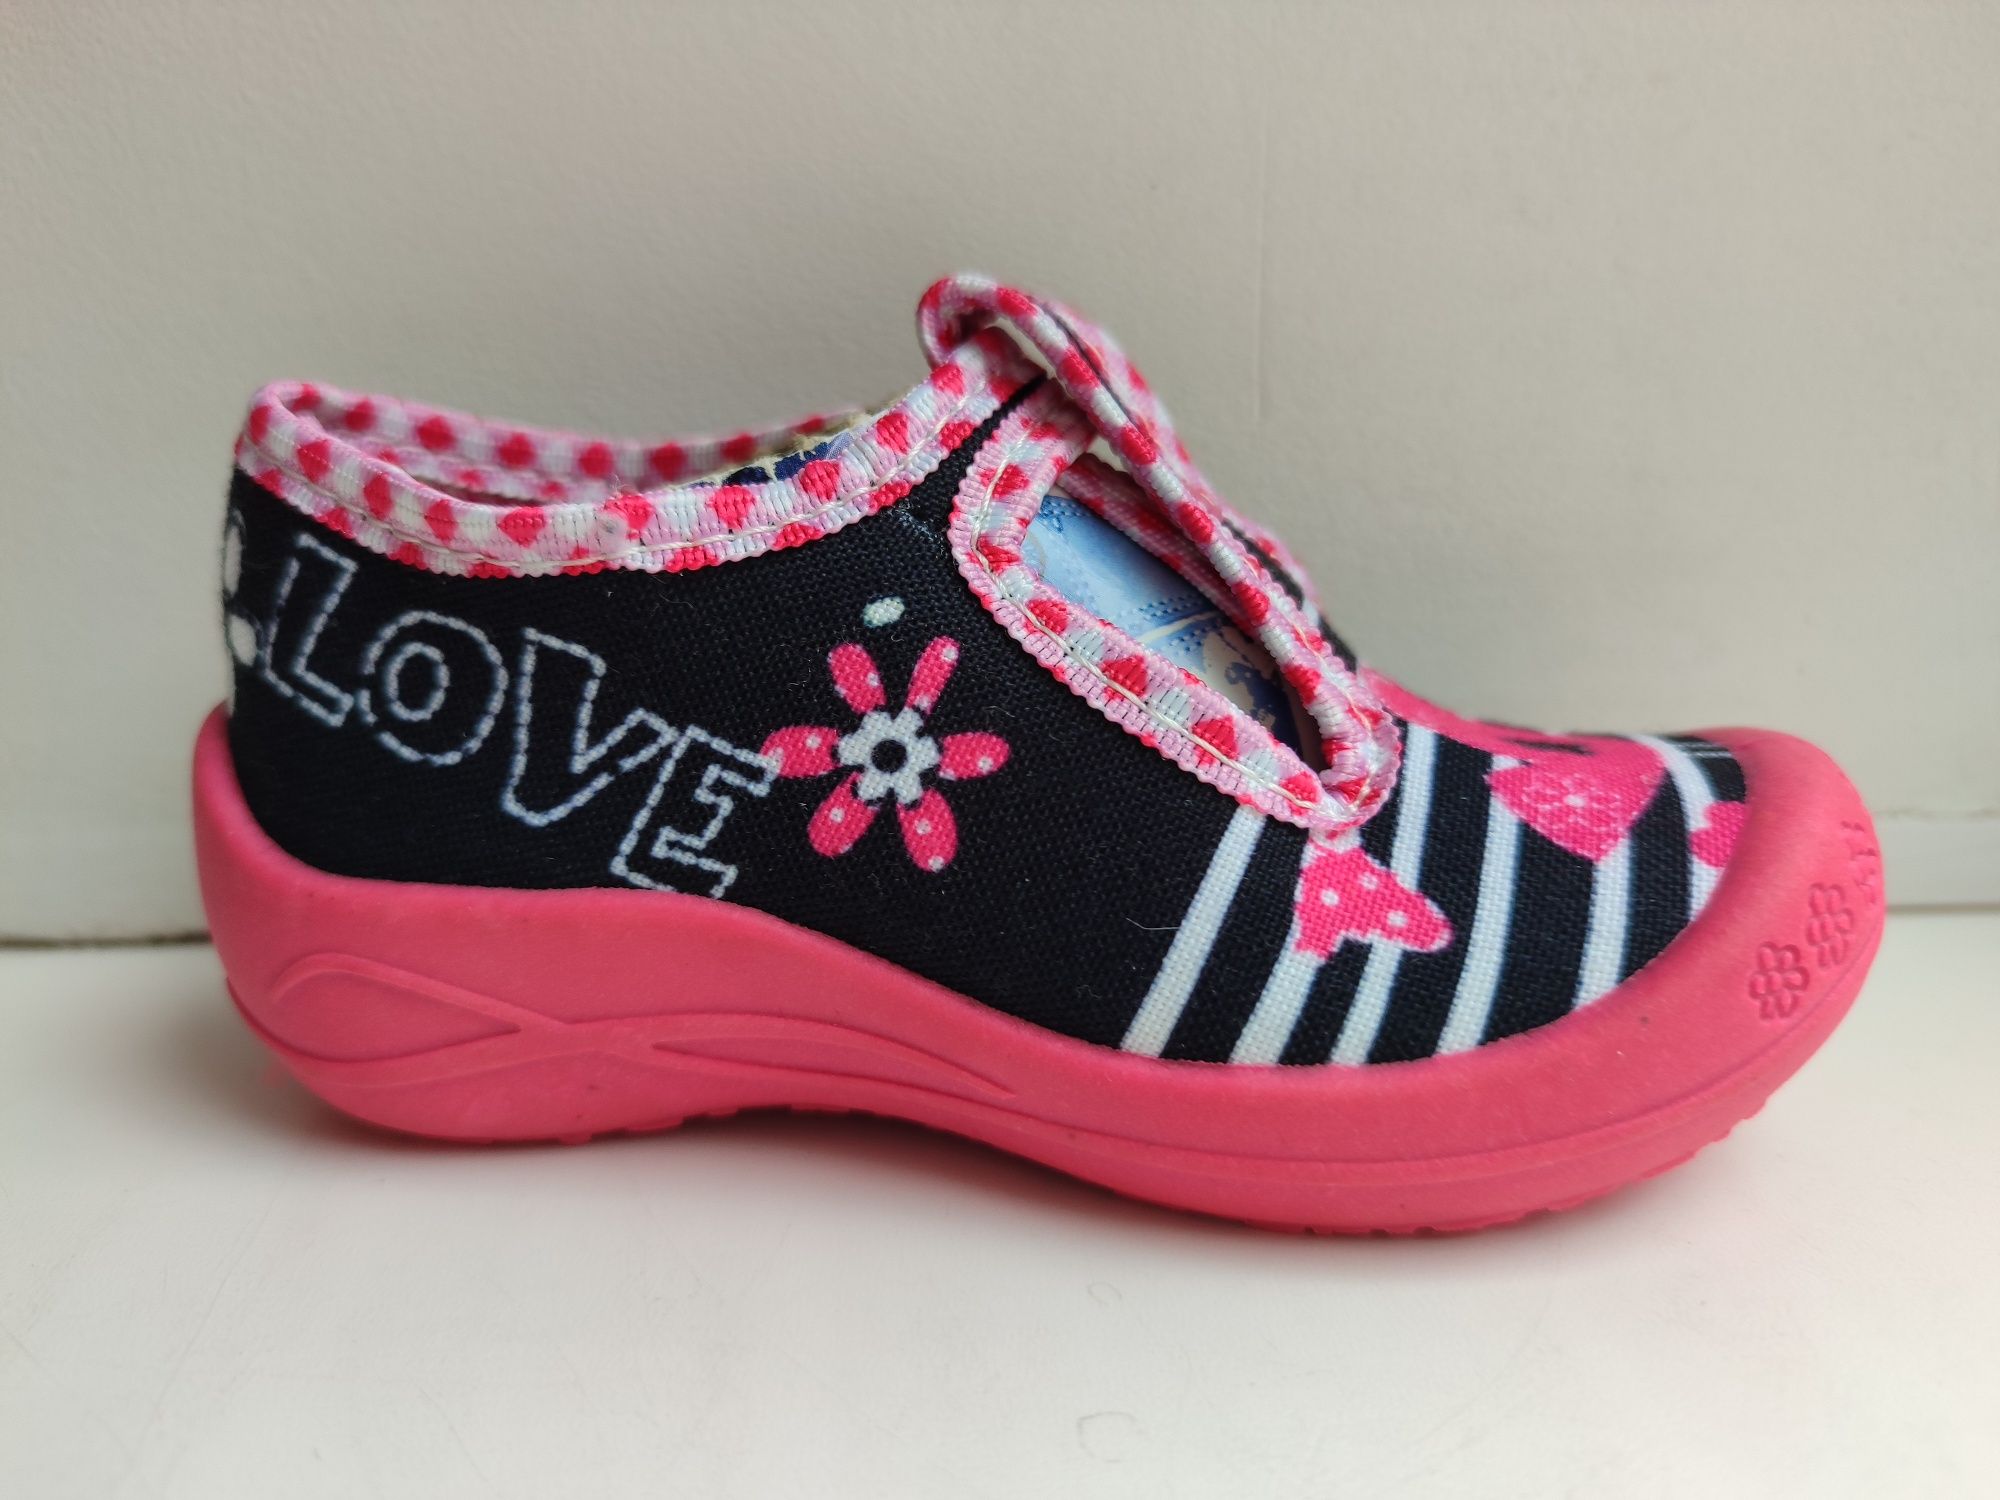 Предлагаем туфельки для девочек торговой марки "3F"